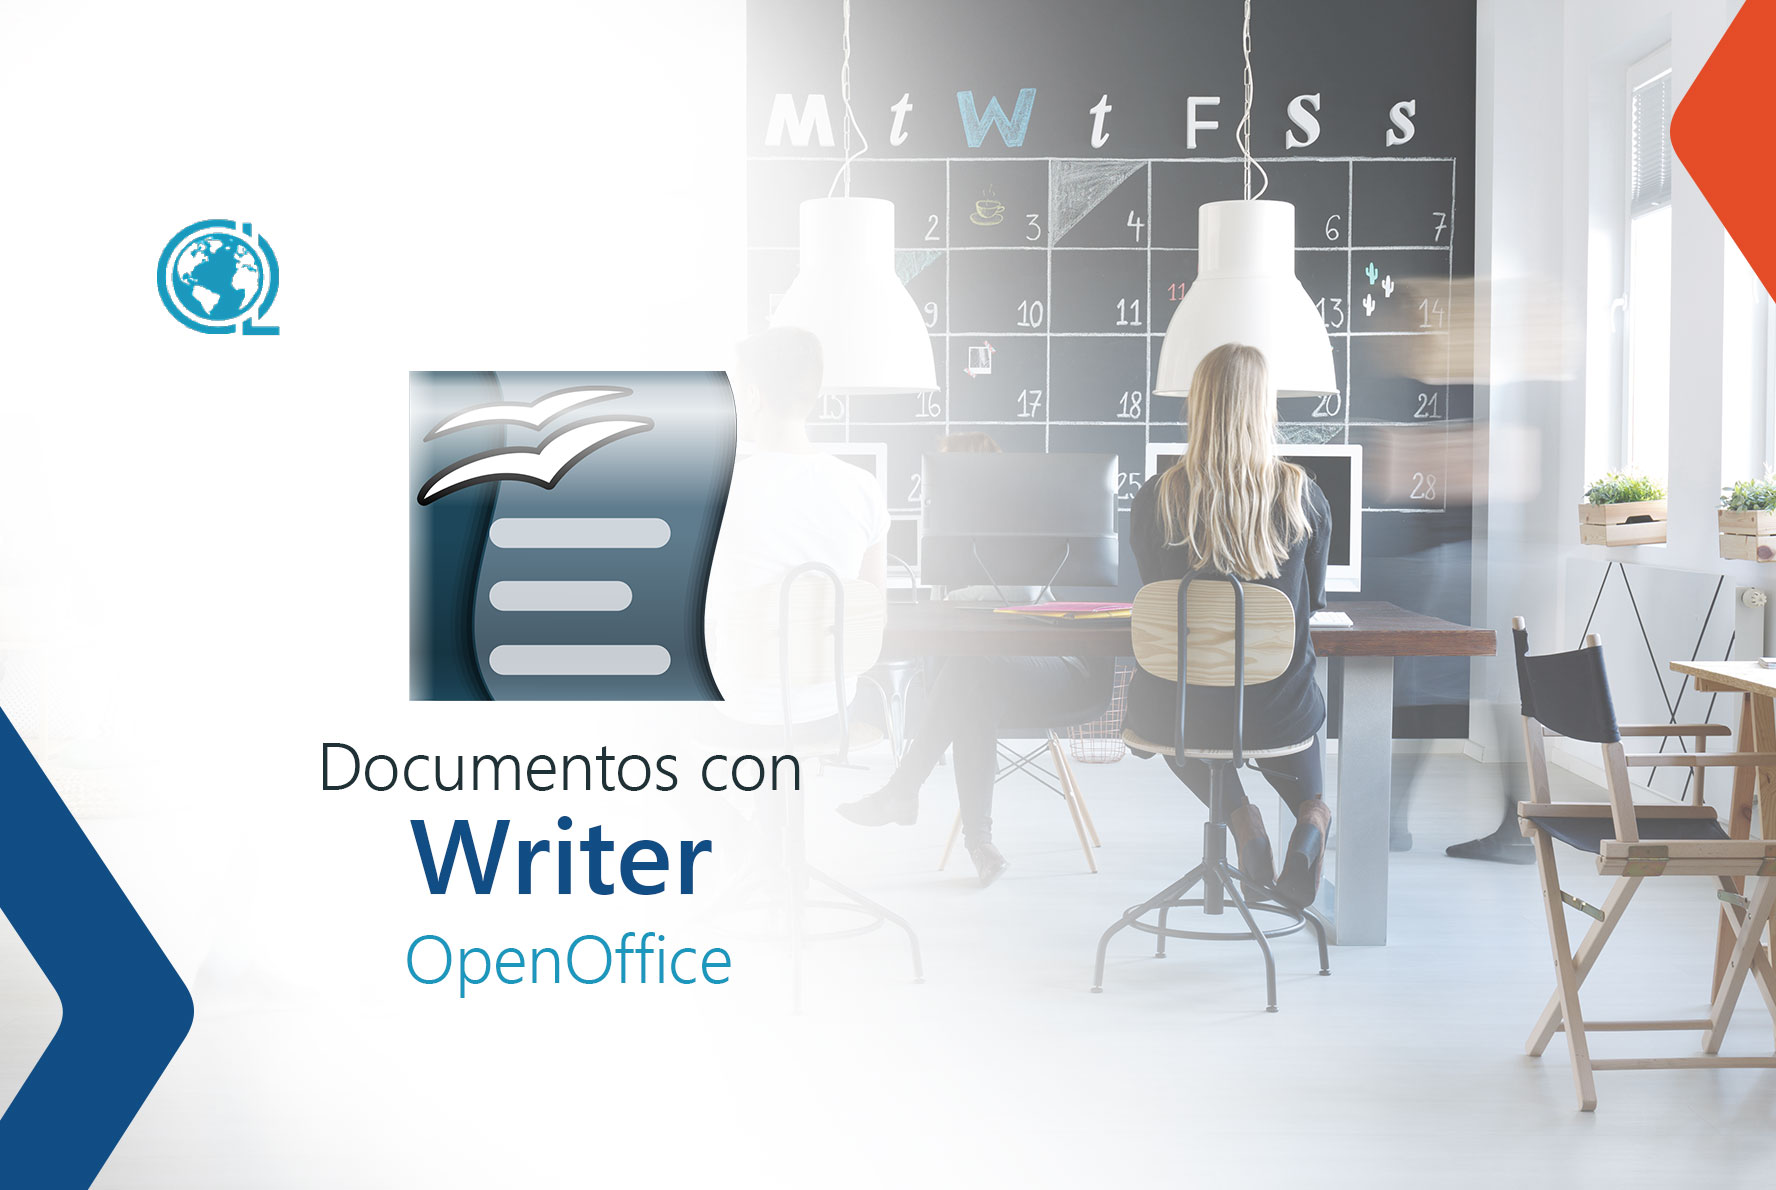 Creación y gestión eficaz de documentos en la empresa con Writer (Open Office)